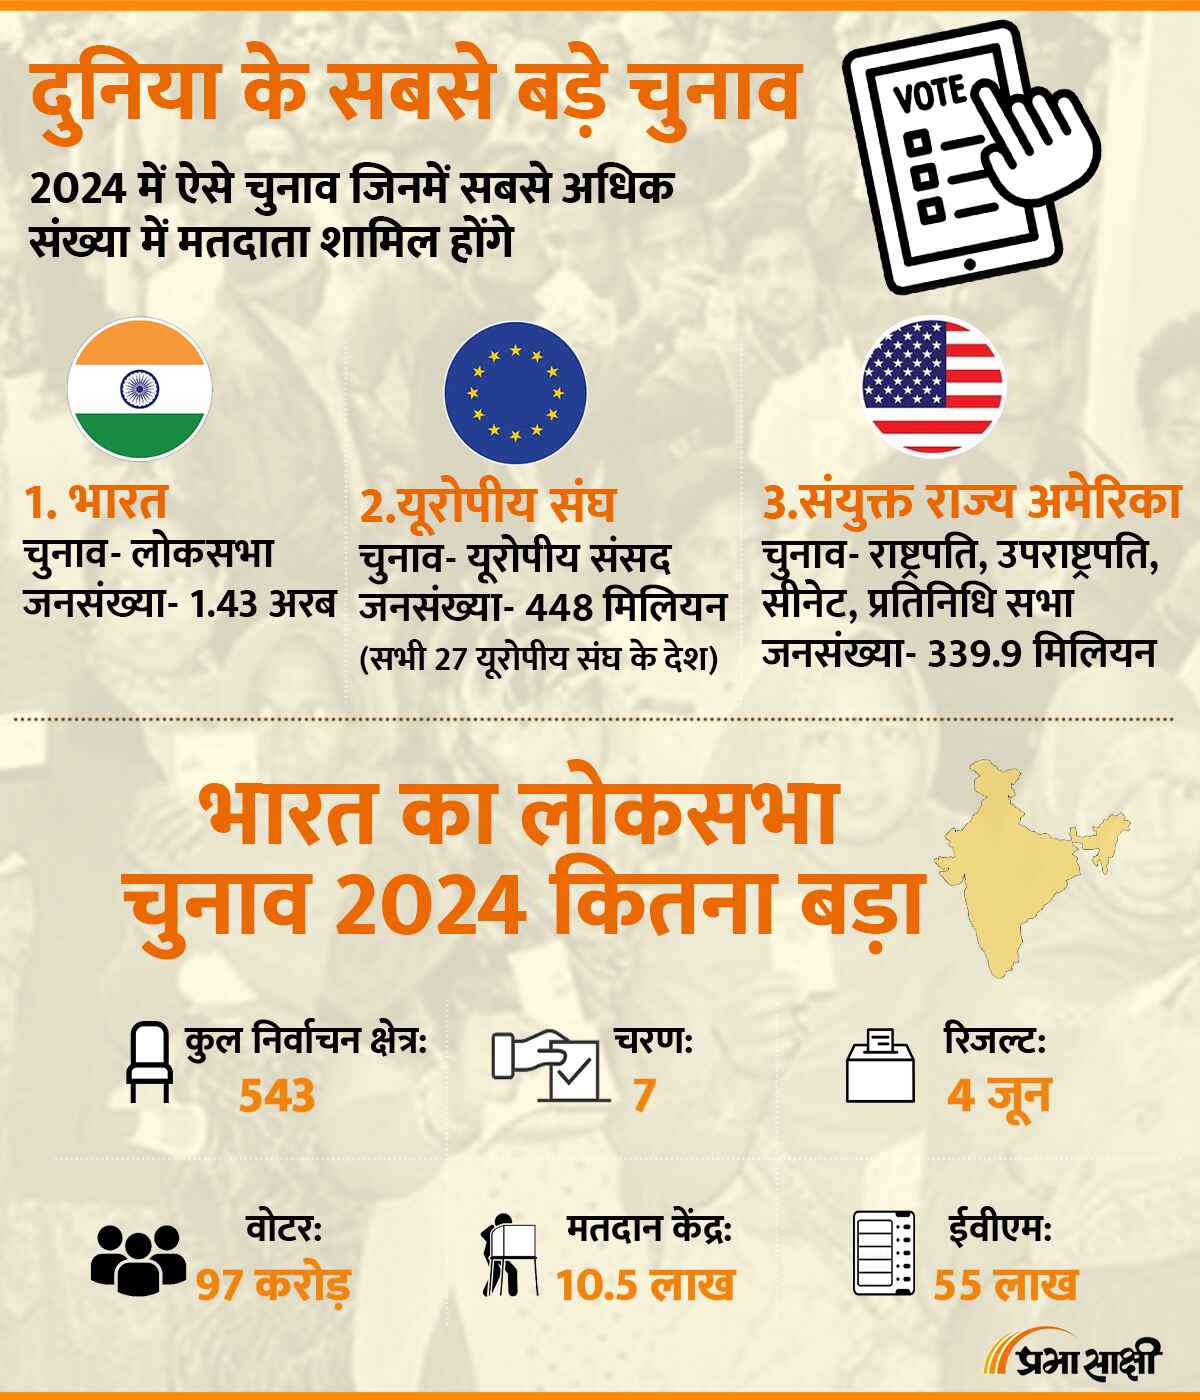 भारत का लोकसभा चुनाव 2024 कितना बड़ा?